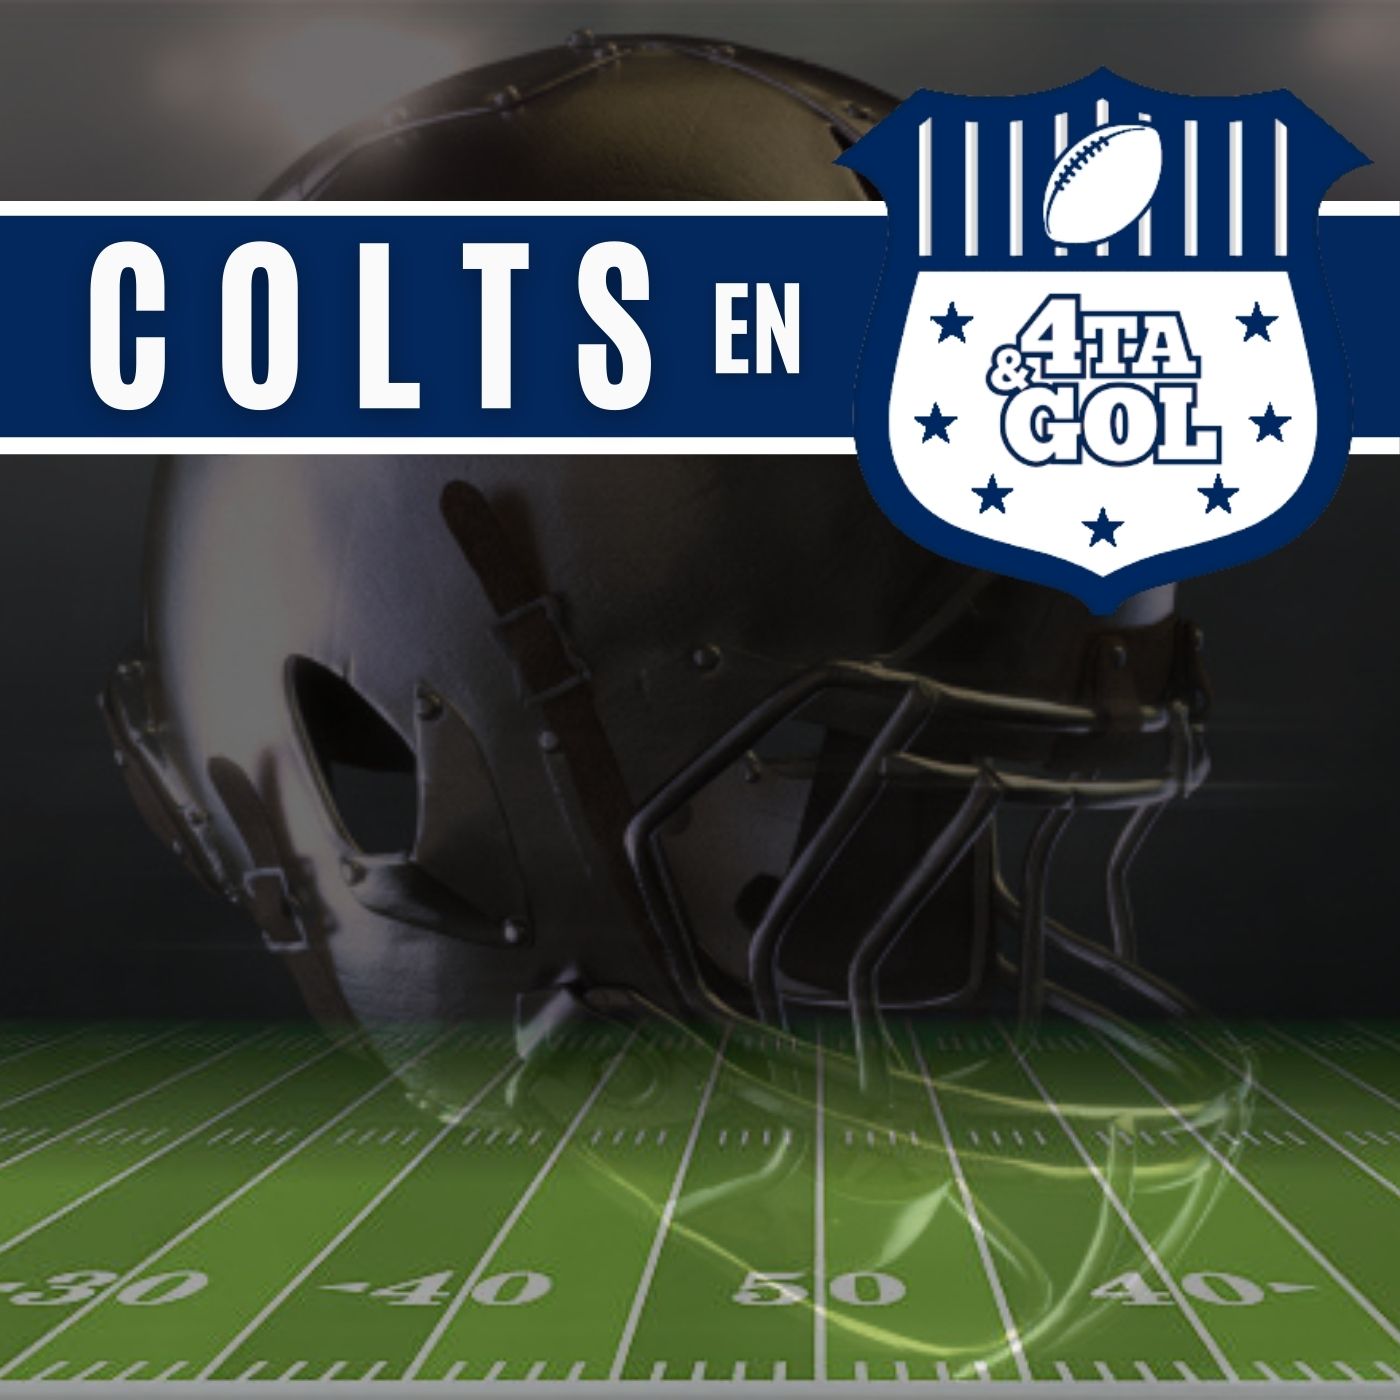 Artwork for Colts en Cuarta y Gol